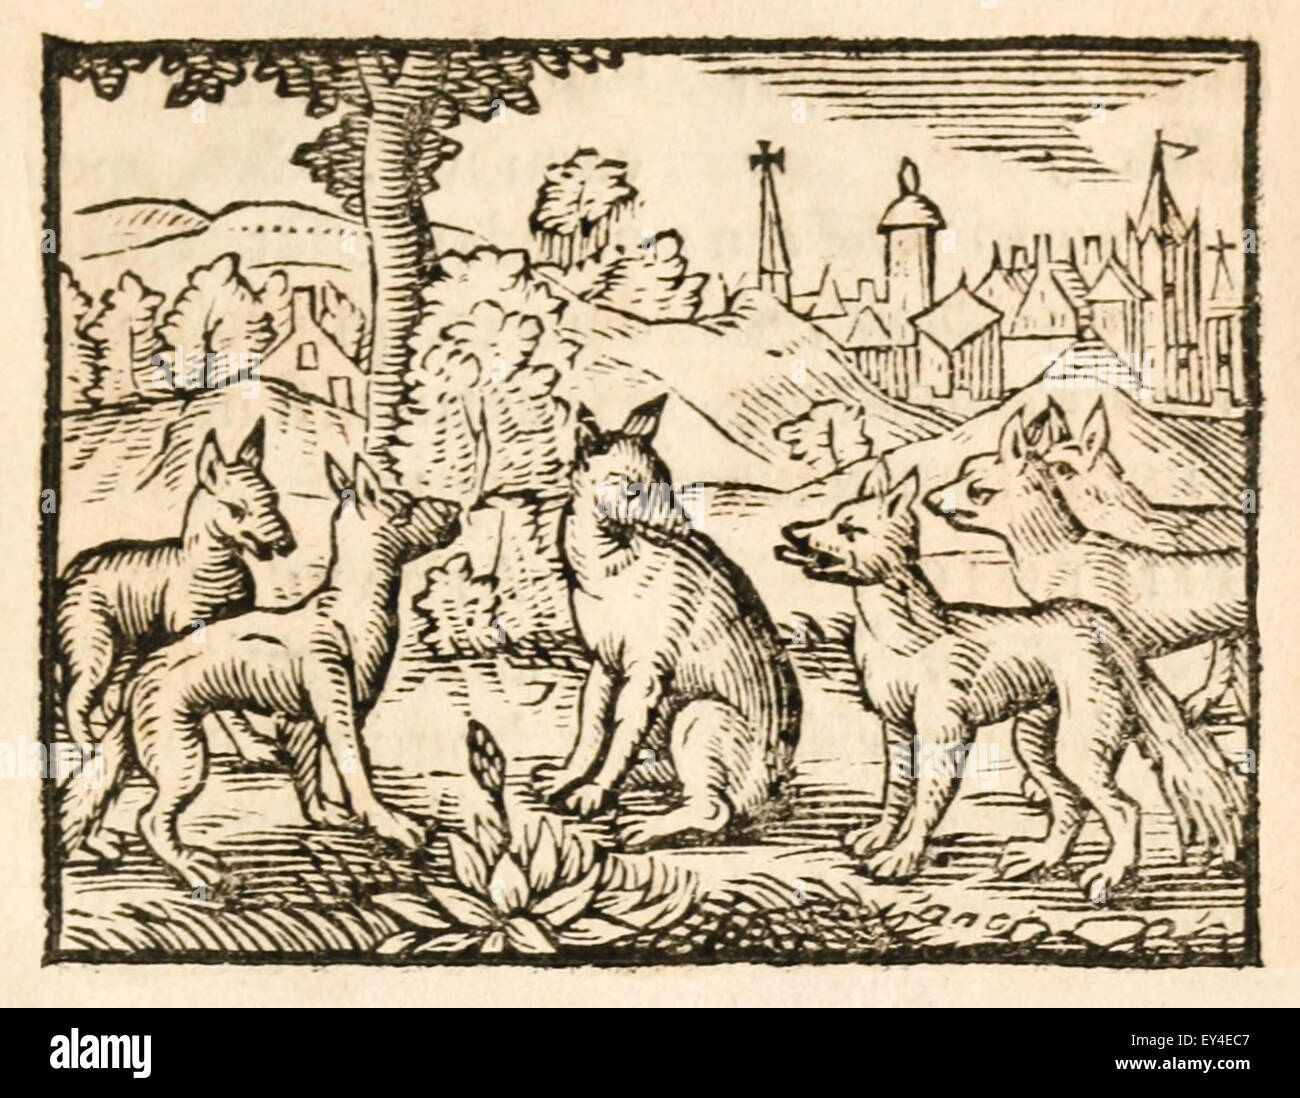 "Die Füchse und ihren Schwänzen" Fabel von Aesop (ca. 600). Ein Fuchs hat seinen Schweif abgeschnitten und versucht, andere Füchse ihrigen abgeschnitten, um ihre Schande zu verbergen. 17. Jahrhundert Holzschnitt Drucken zur Veranschaulichung Aesop Fabeln. Siehe Beschreibung für mehr Informationen. Stockfoto